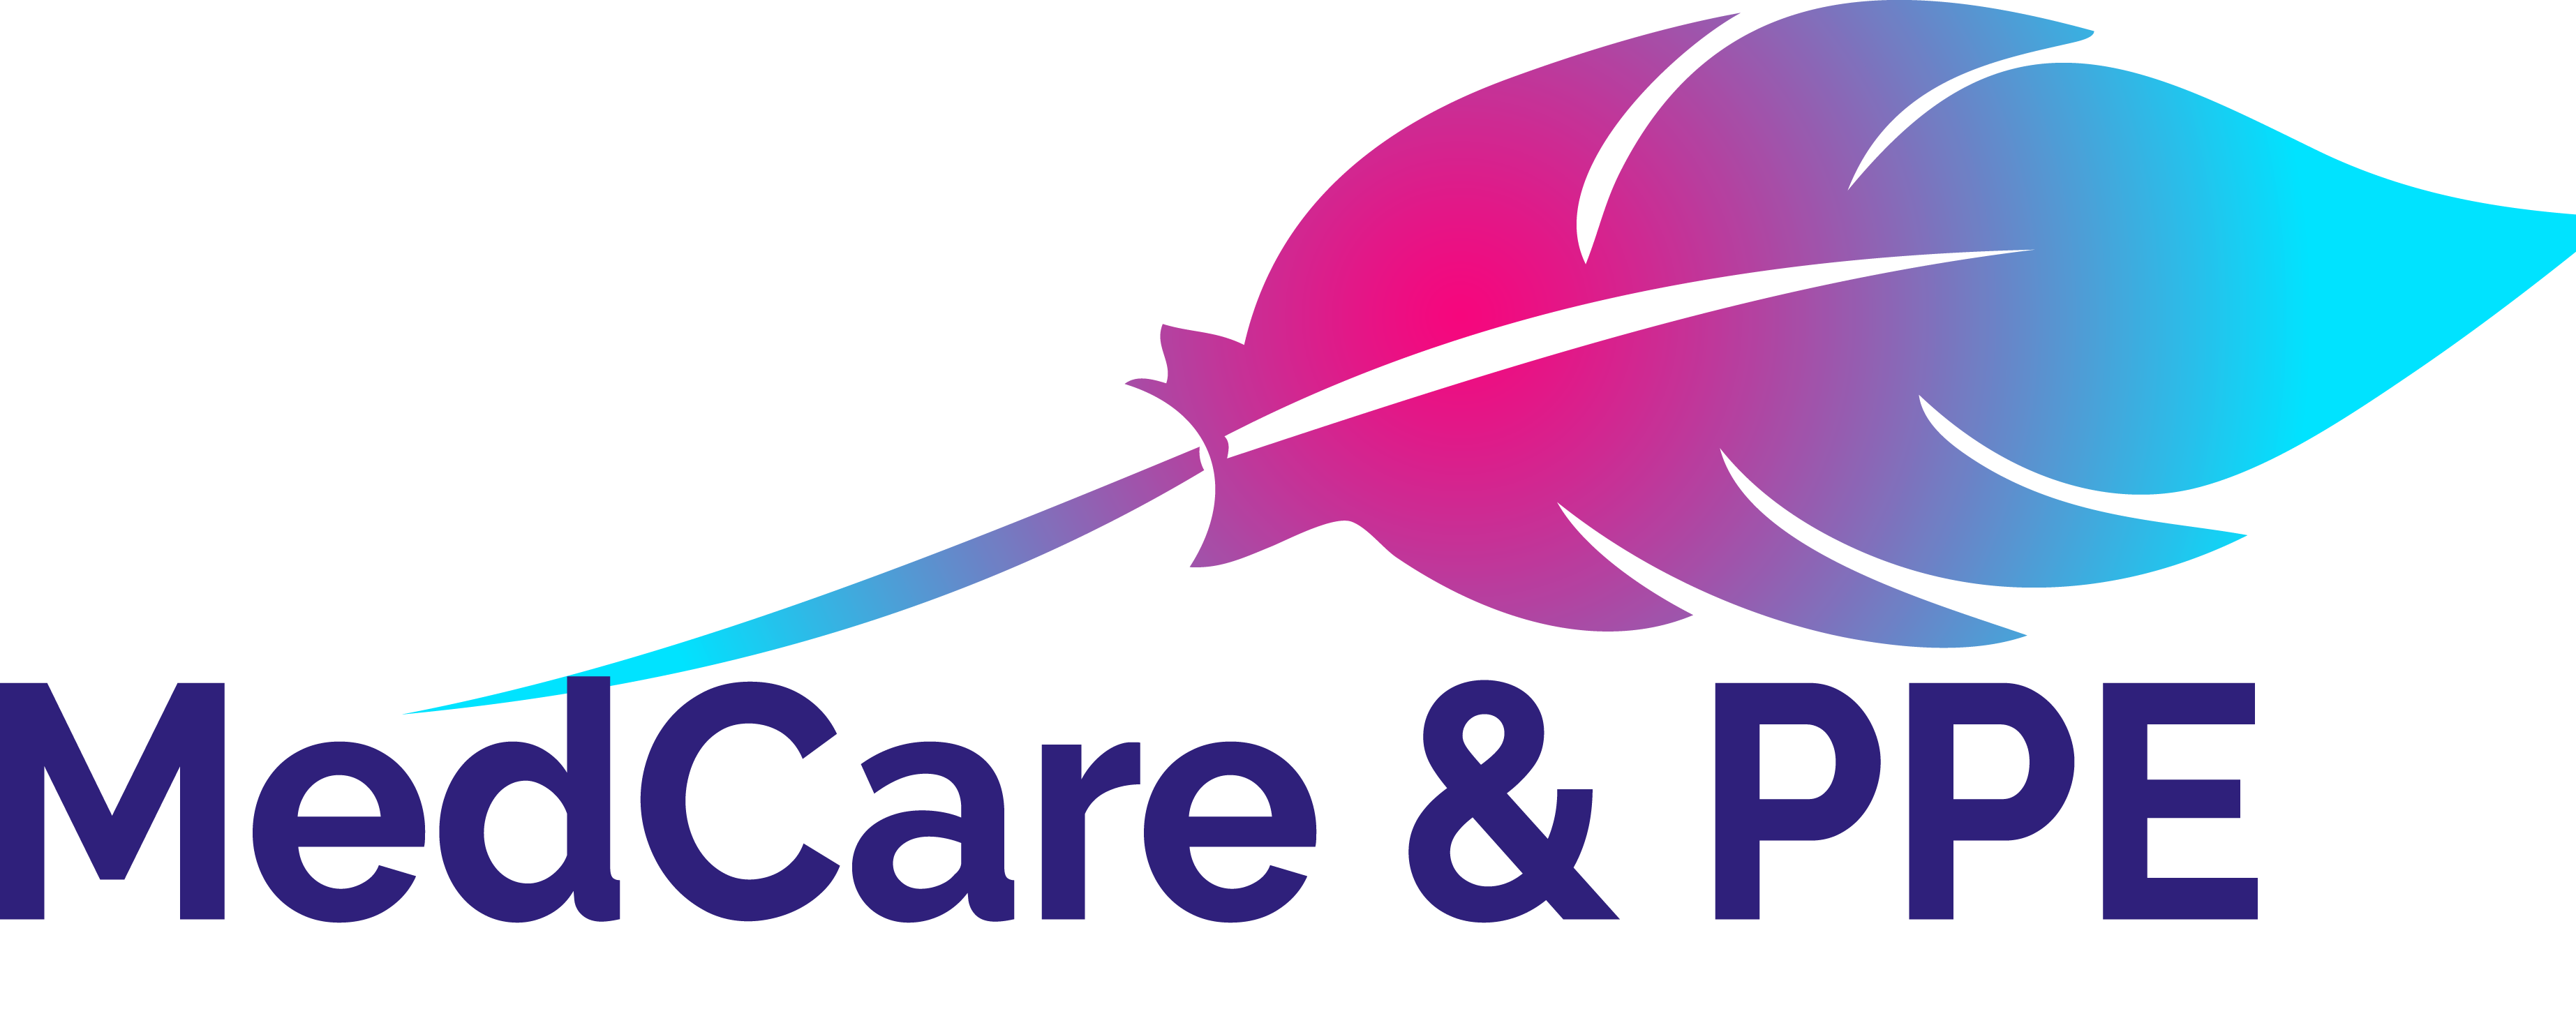 Medcare & PPE Logo